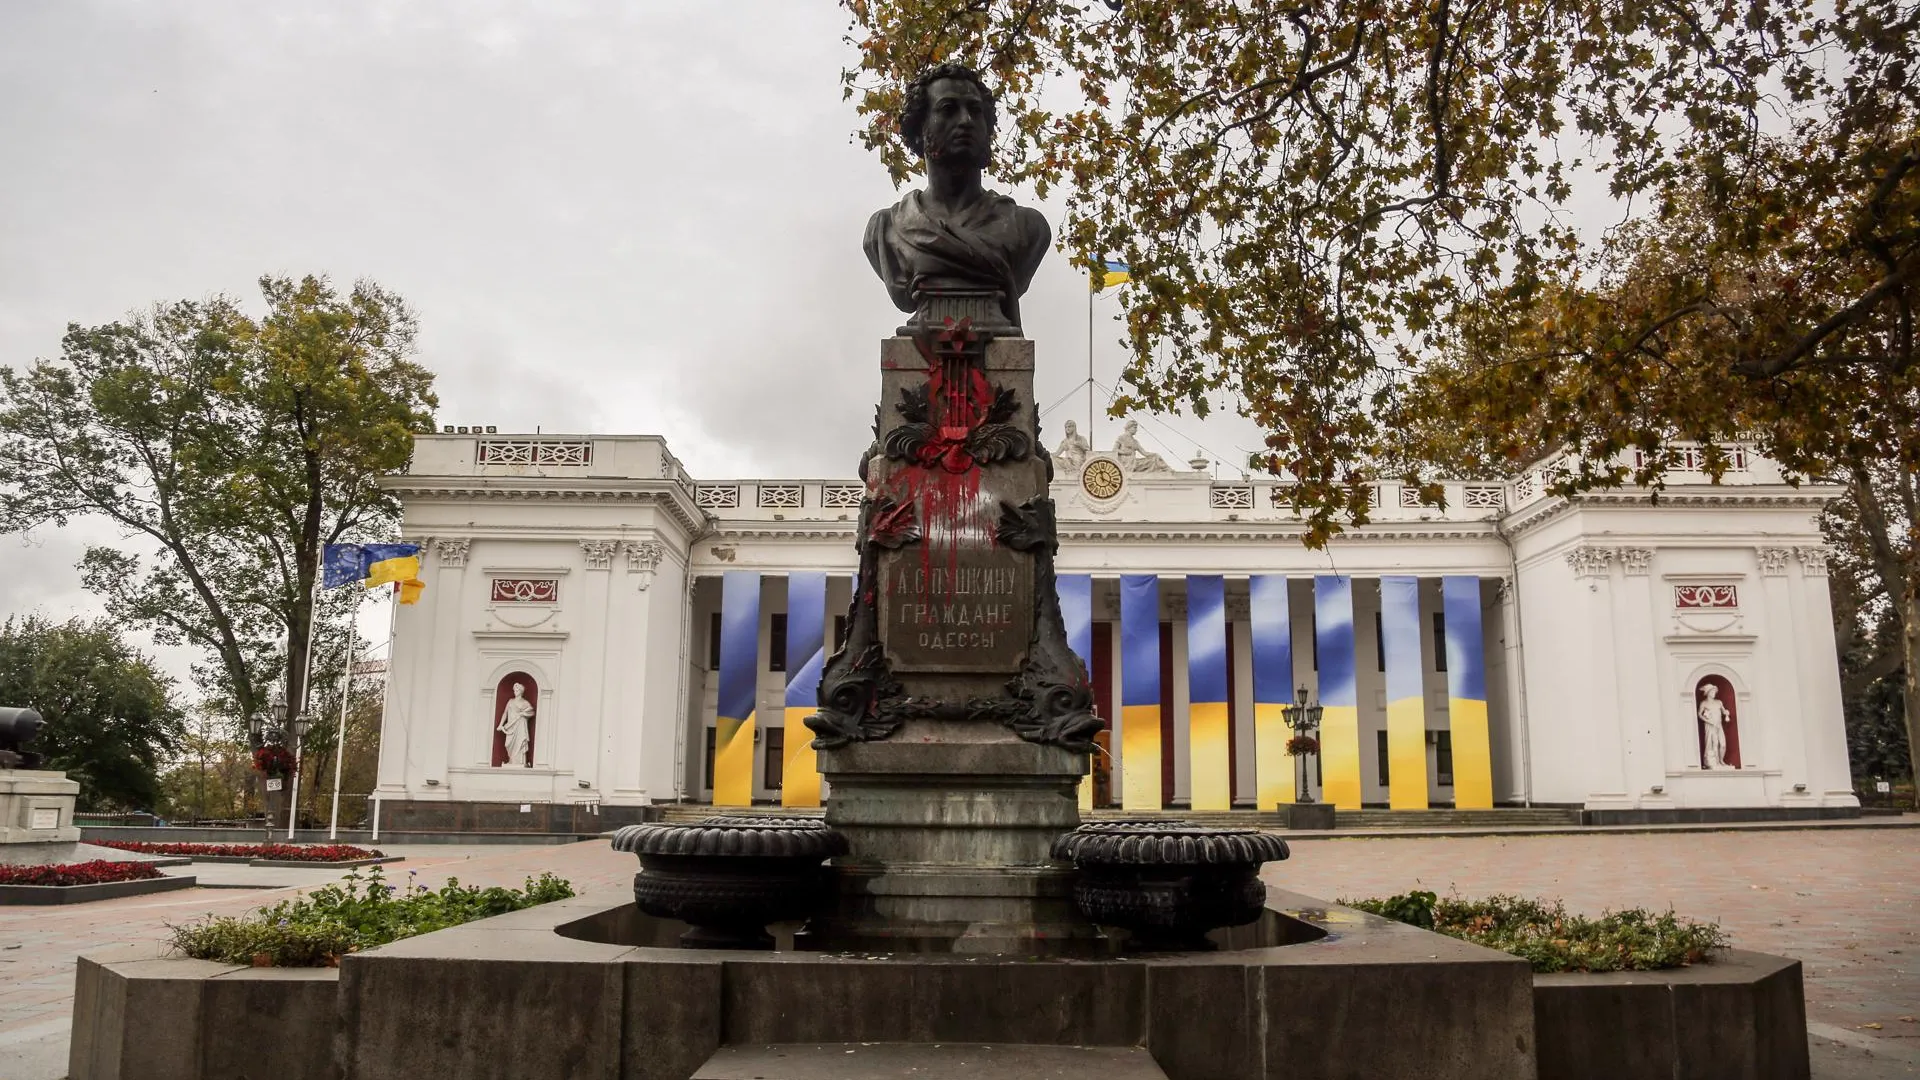 Облитый красной краской памятник А. С. Пушкину в Одессе / Viacheslav Onyshchenko / Keystone Press Agency